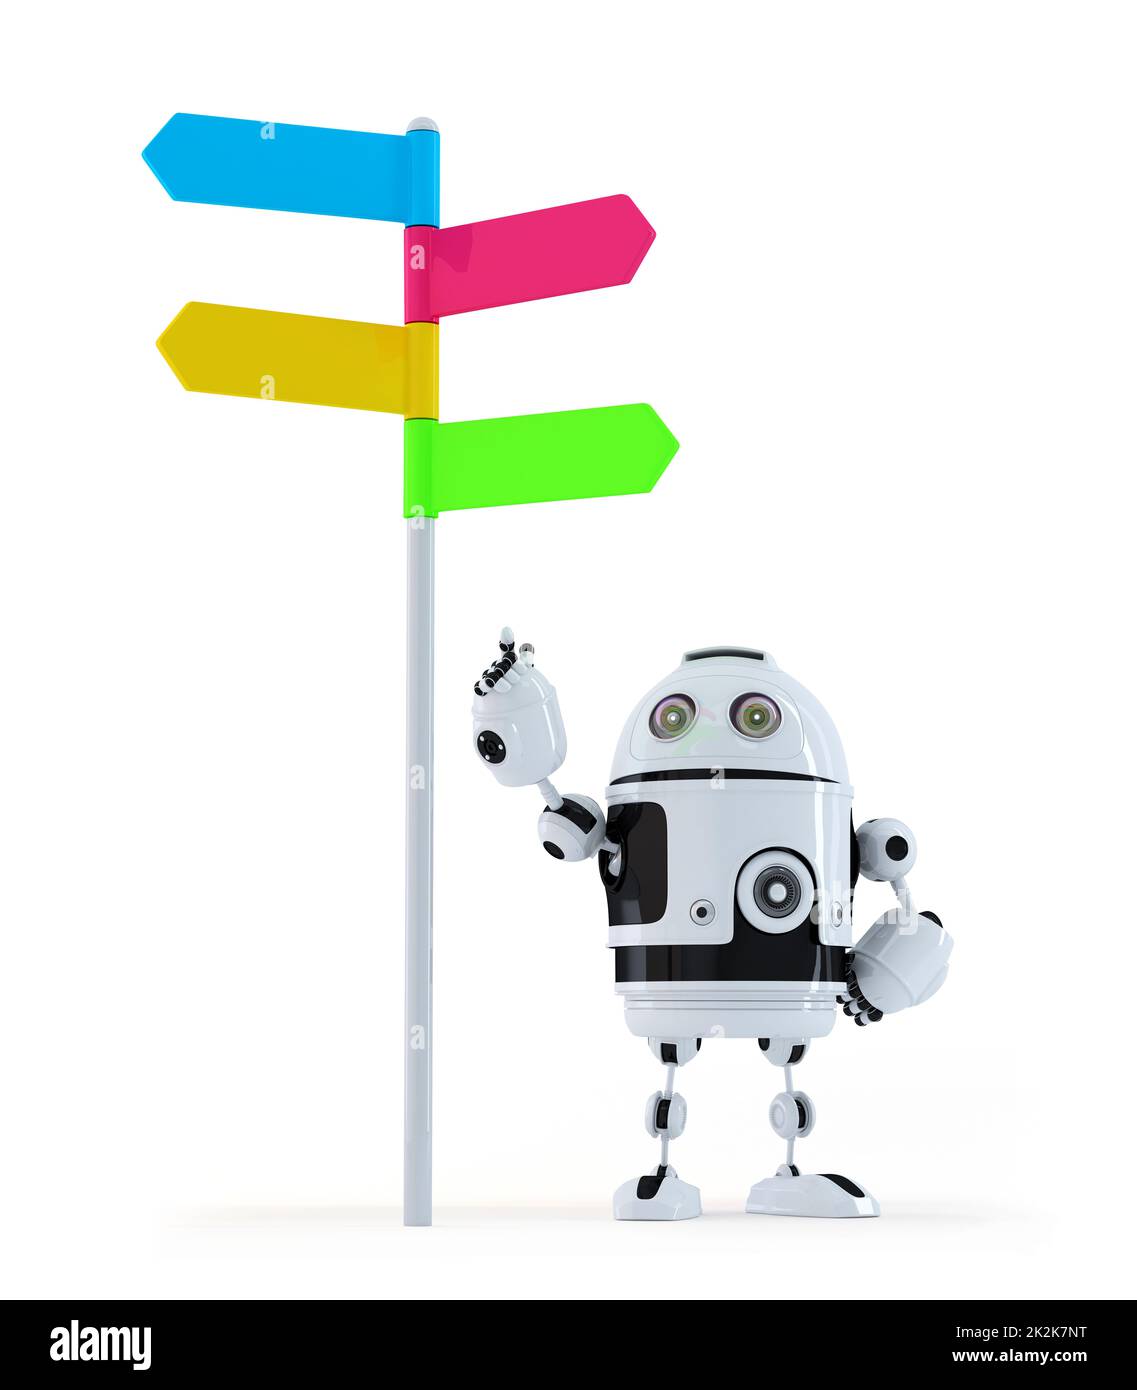 Robot pointant vers le panneau de signalisation Banque D'Images